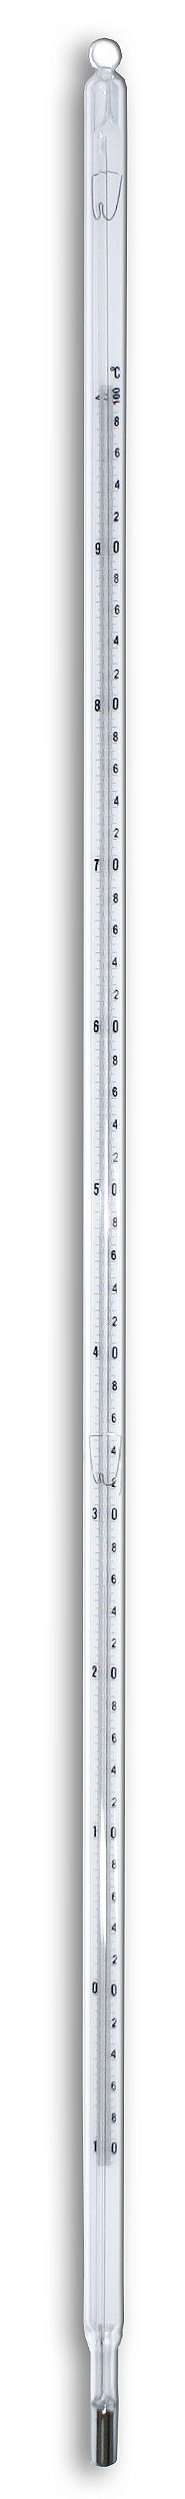 Termômetro Decimal -10+100 0,1C - HG - Rei dos Termômetros | Equipamentos  de Medições | Serviços | Consultoria